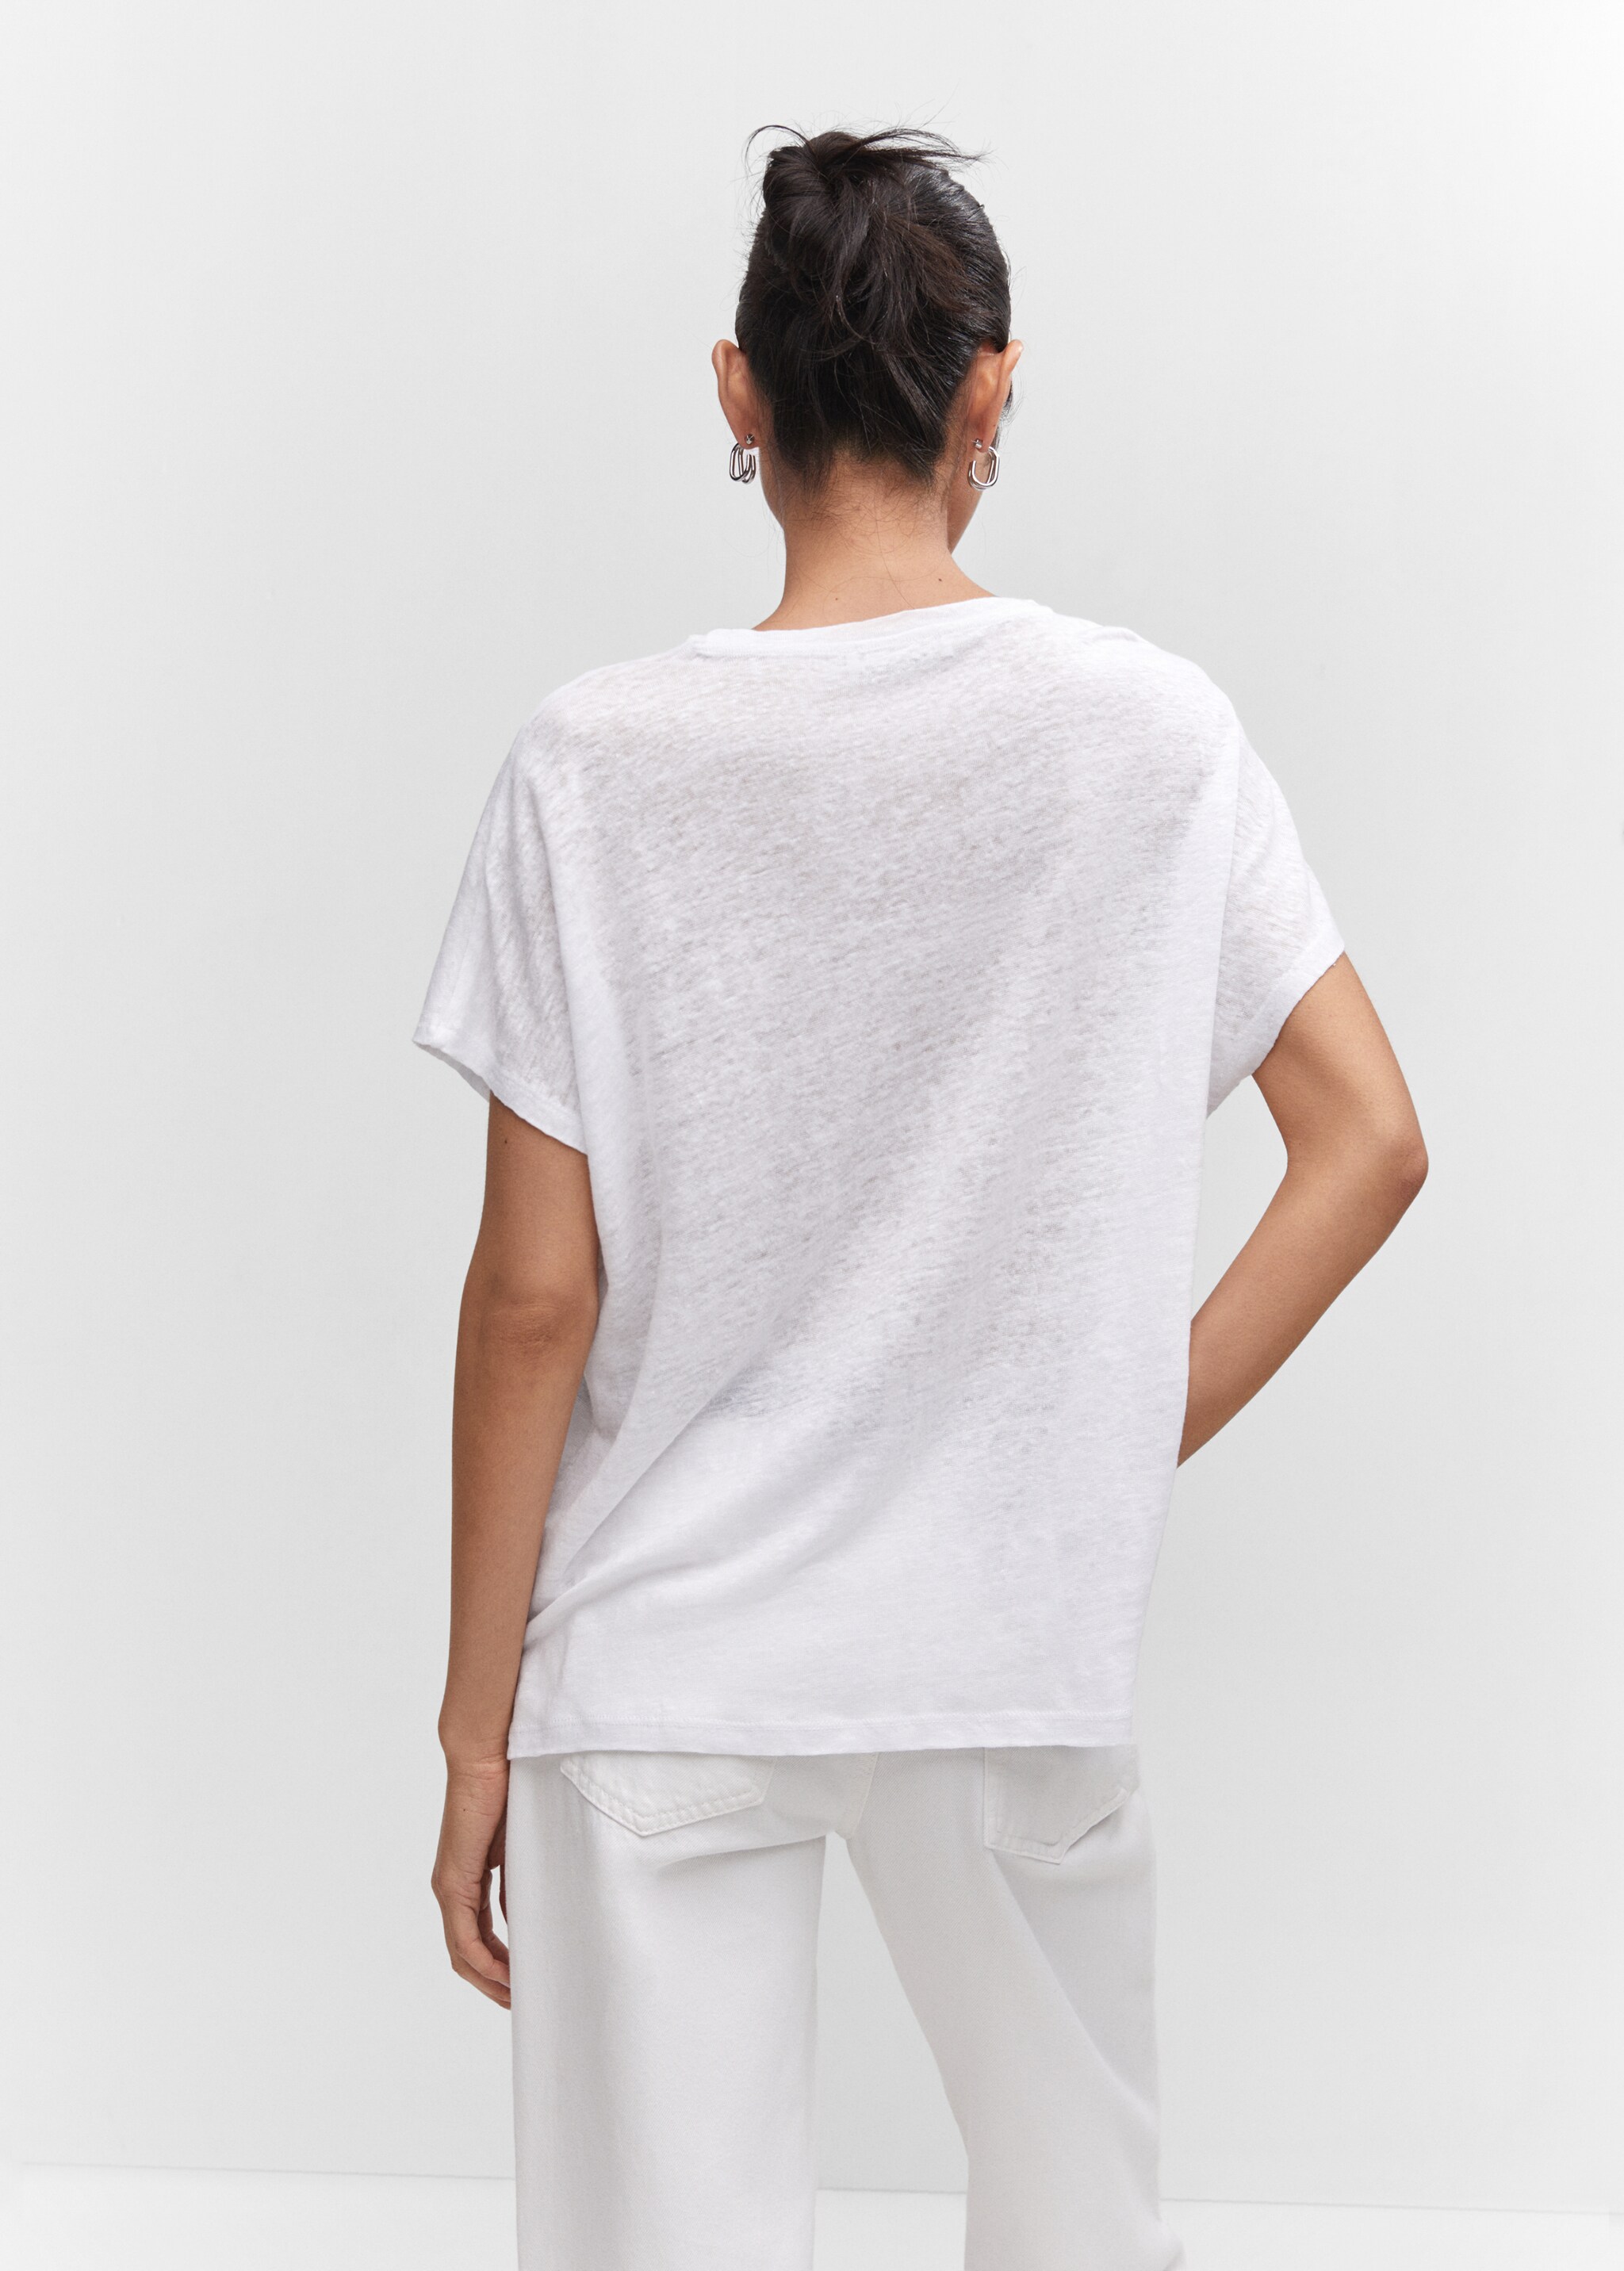 Camiseta lino oversize - Reverso del artículo